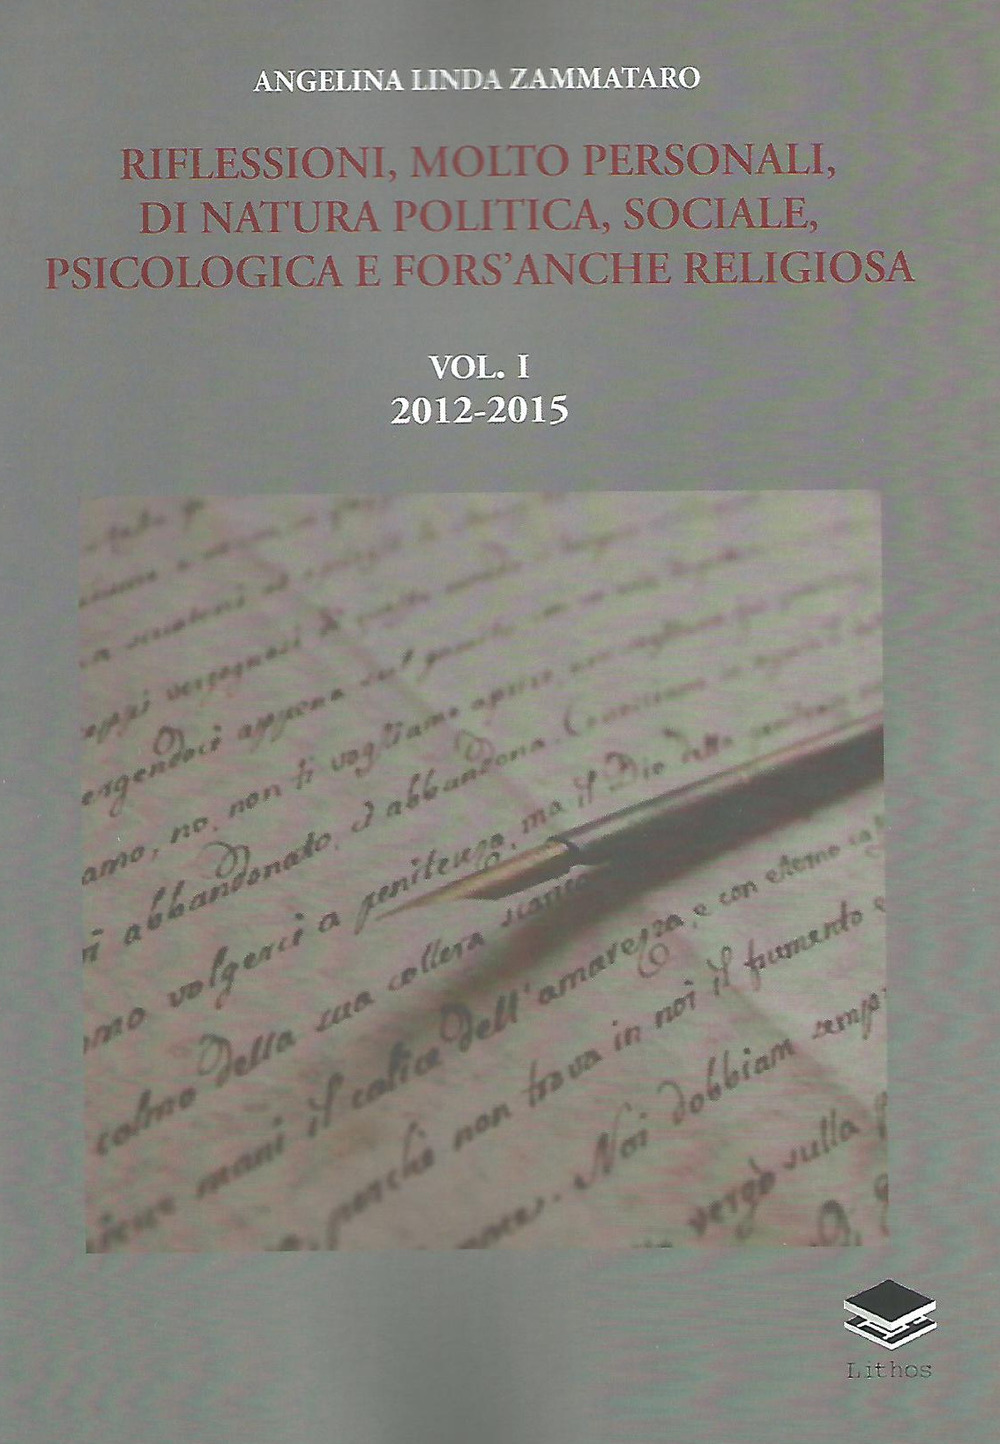 Image of Riflessioni, molto personali, di natura politica, sociale, psicologica e fors'anche religiosa. Vol. 1: 2012-2015.